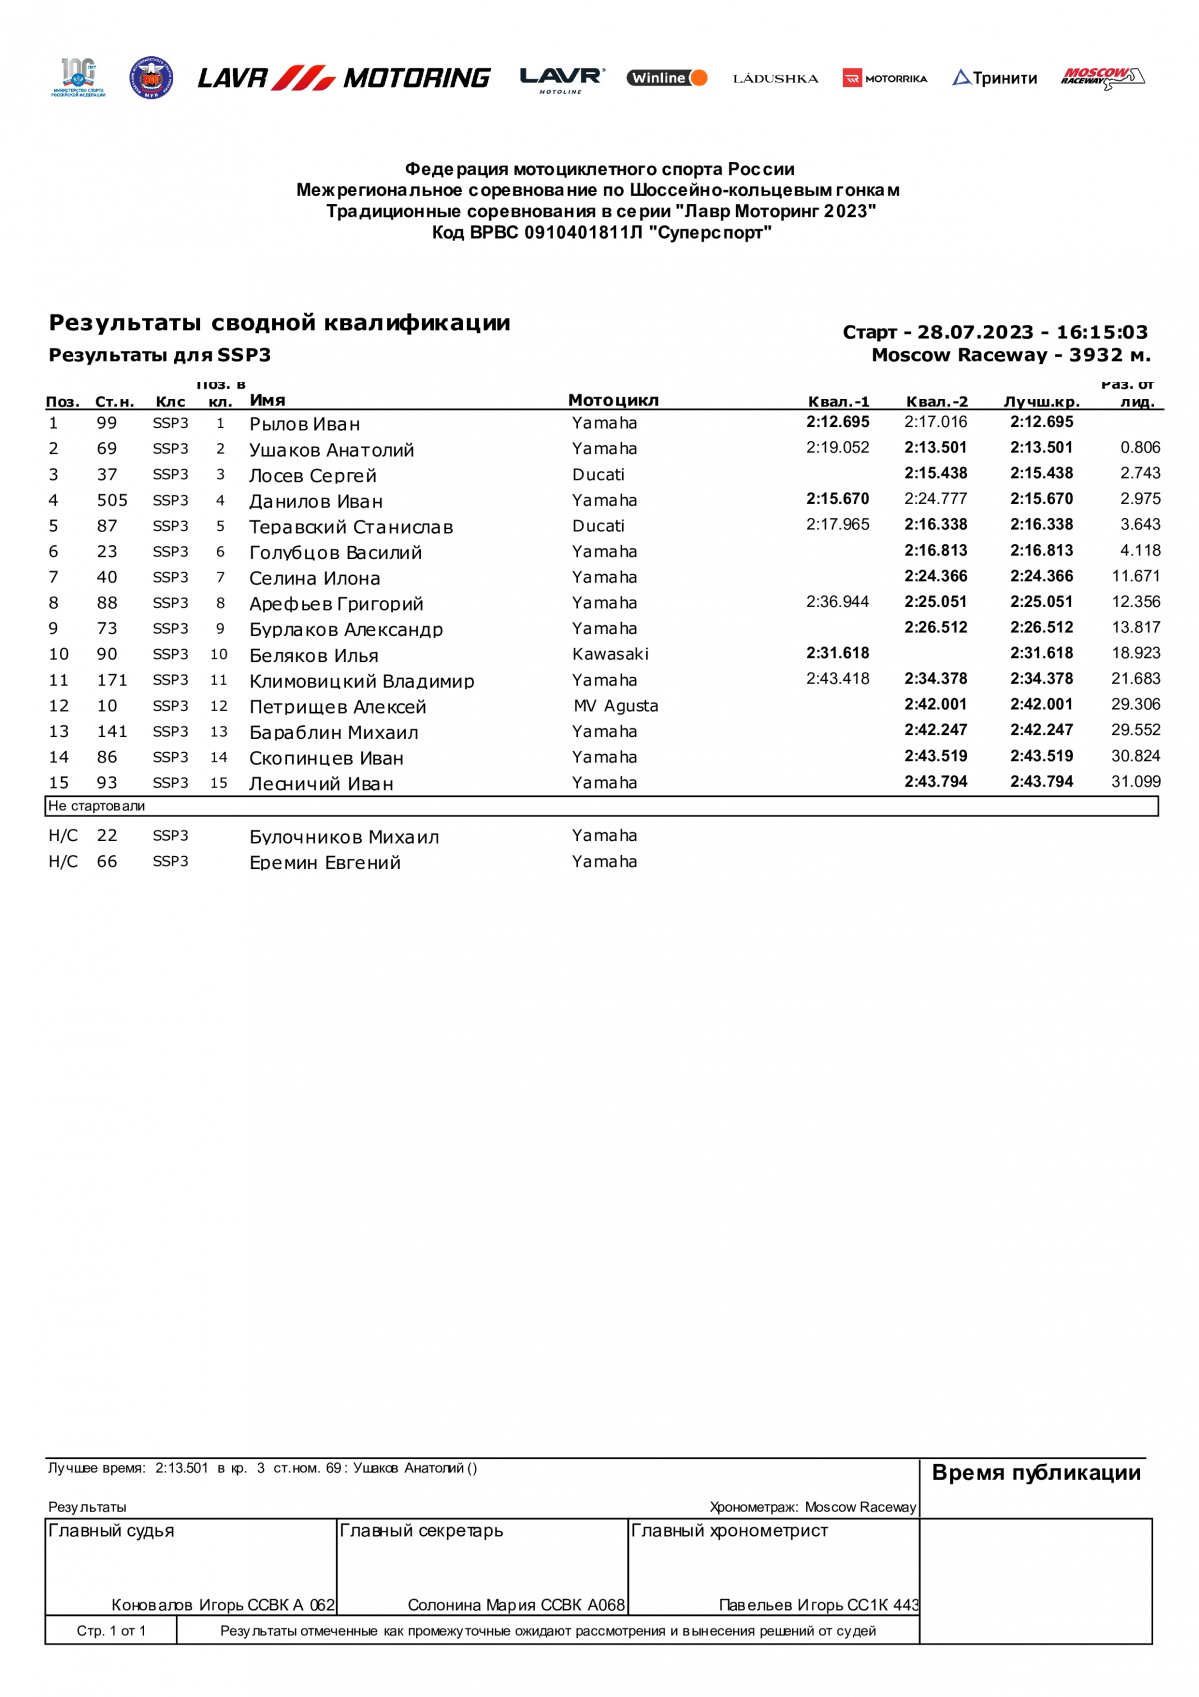 Результаты квалификации 4 этапа чемпионата Lavr Motoring SSP3, Moscow Raceway (28/07/2023)